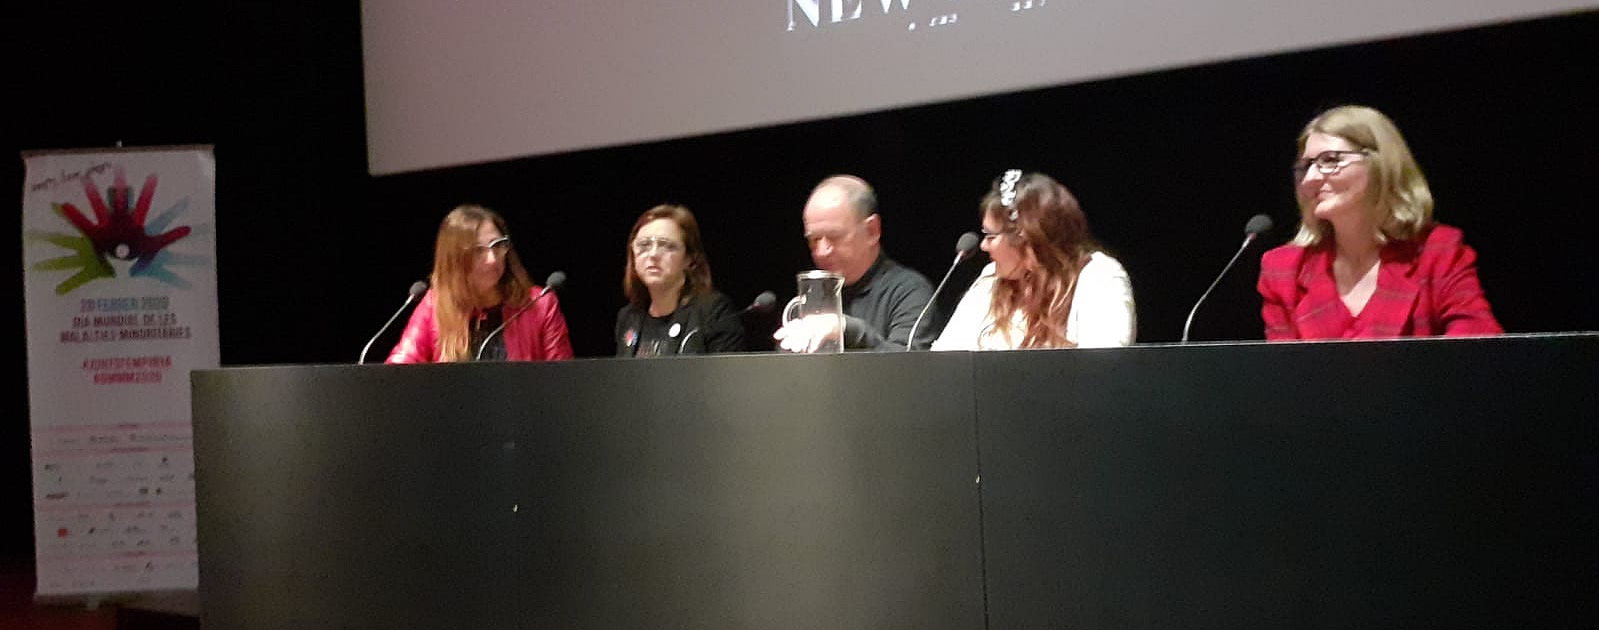 Foto mesa debate cuatro personas, Laura Moreno; Dr. Marius Morlans, Dra. Cristina Díaz de Heredia, Ioanada Arbiol